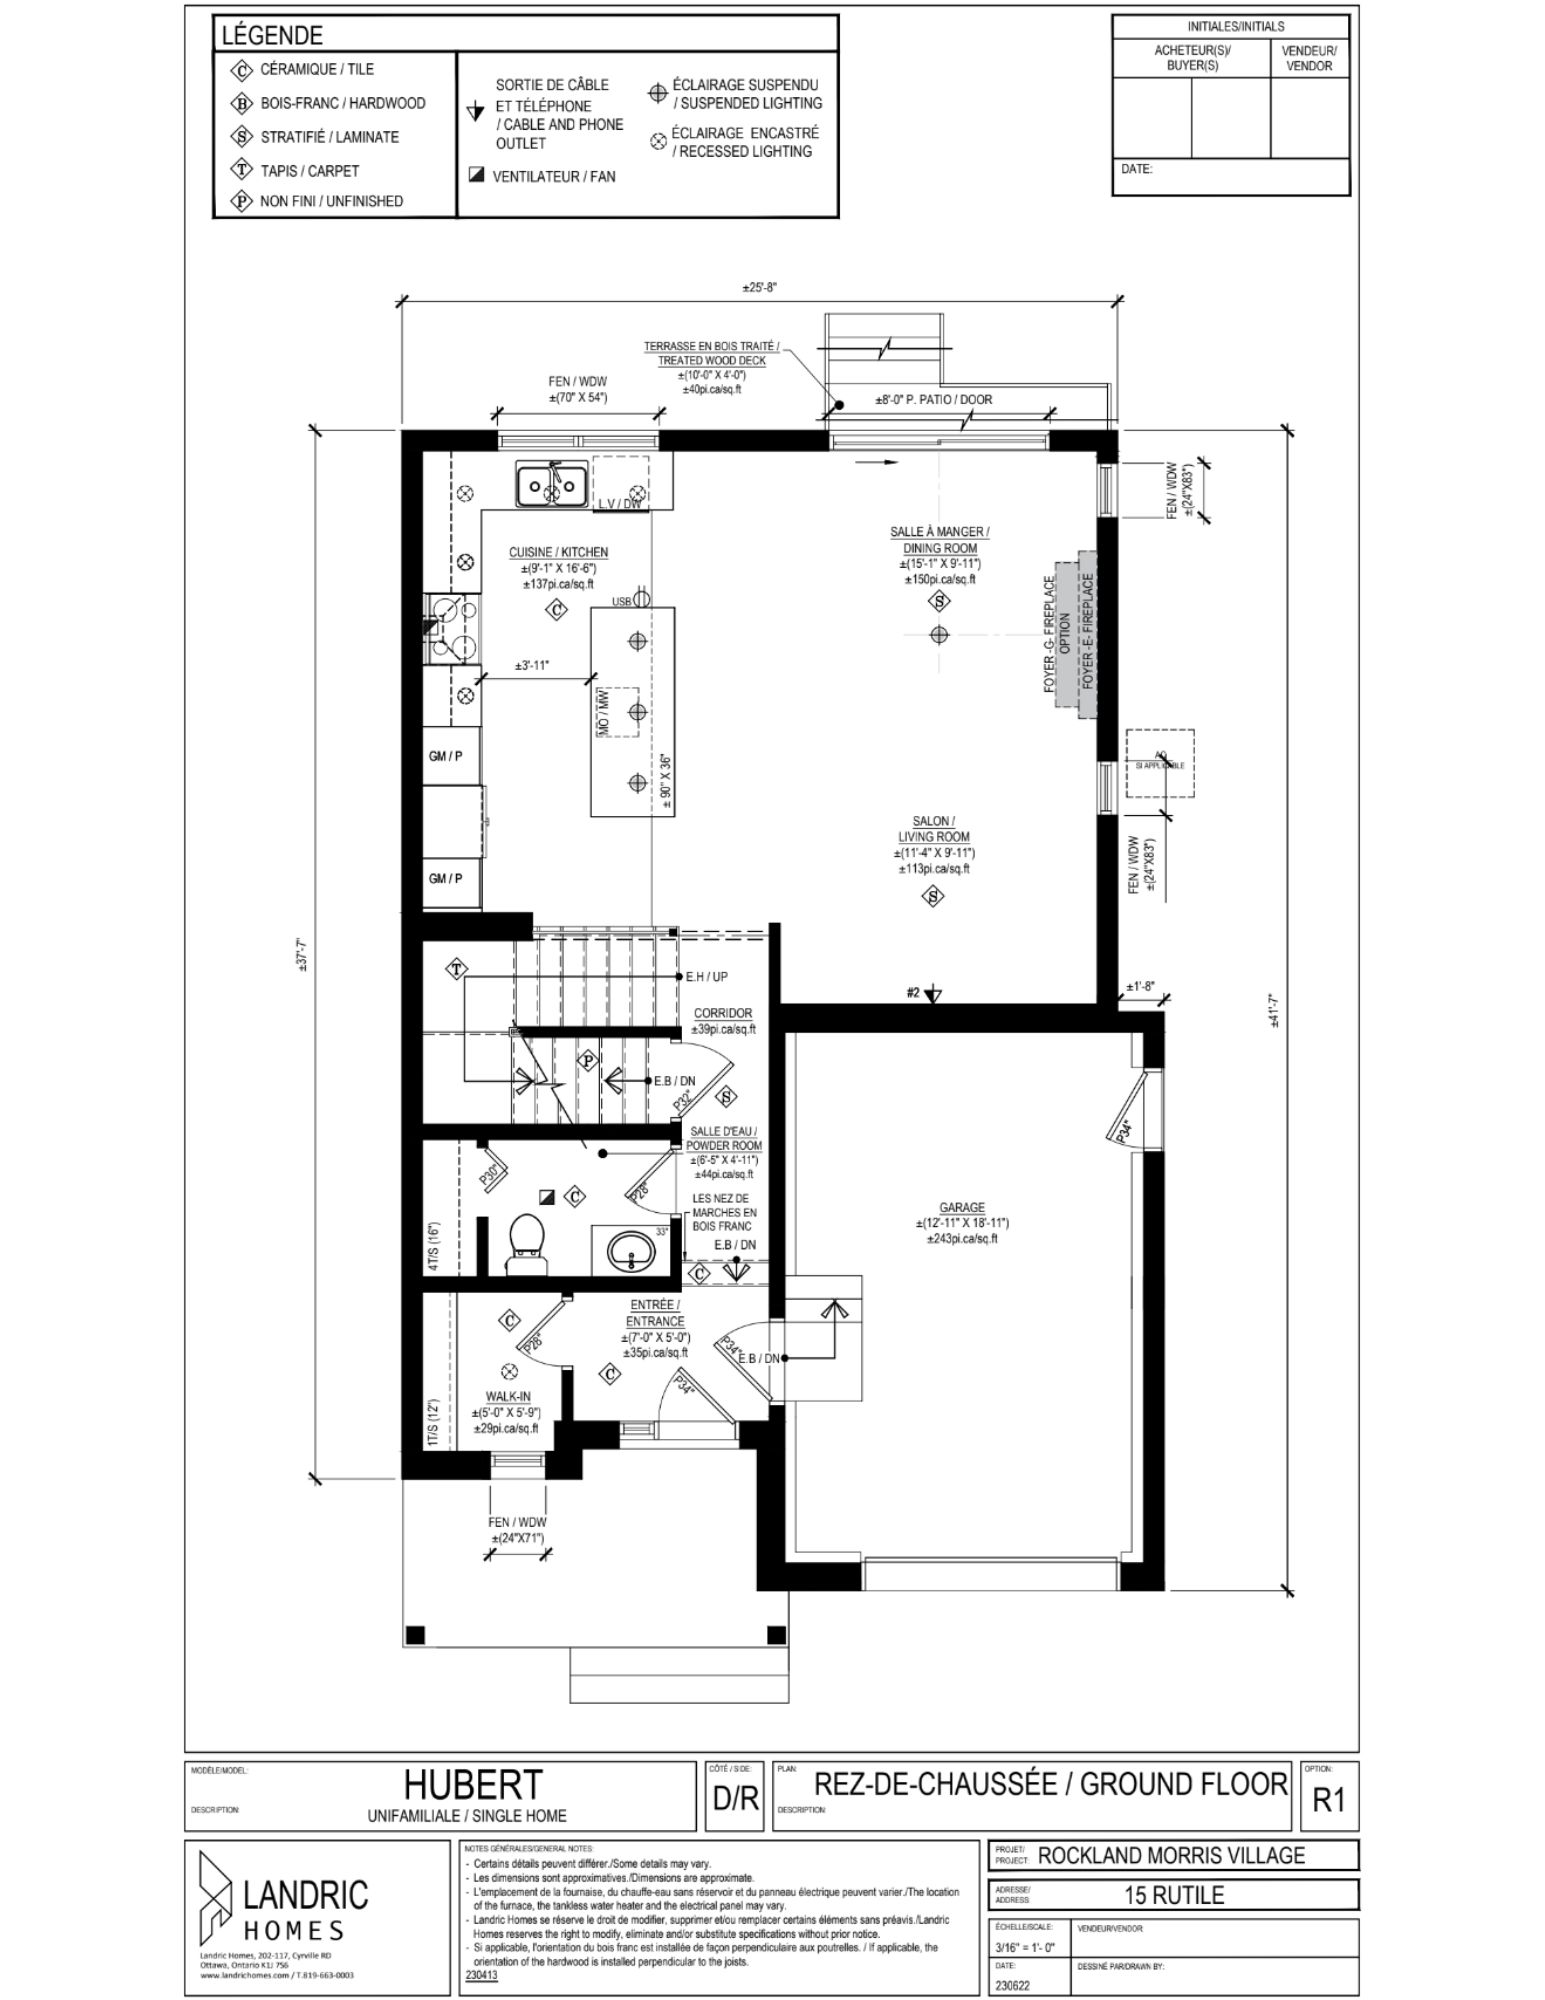 Beaumont, Morris Village floor plans (11)